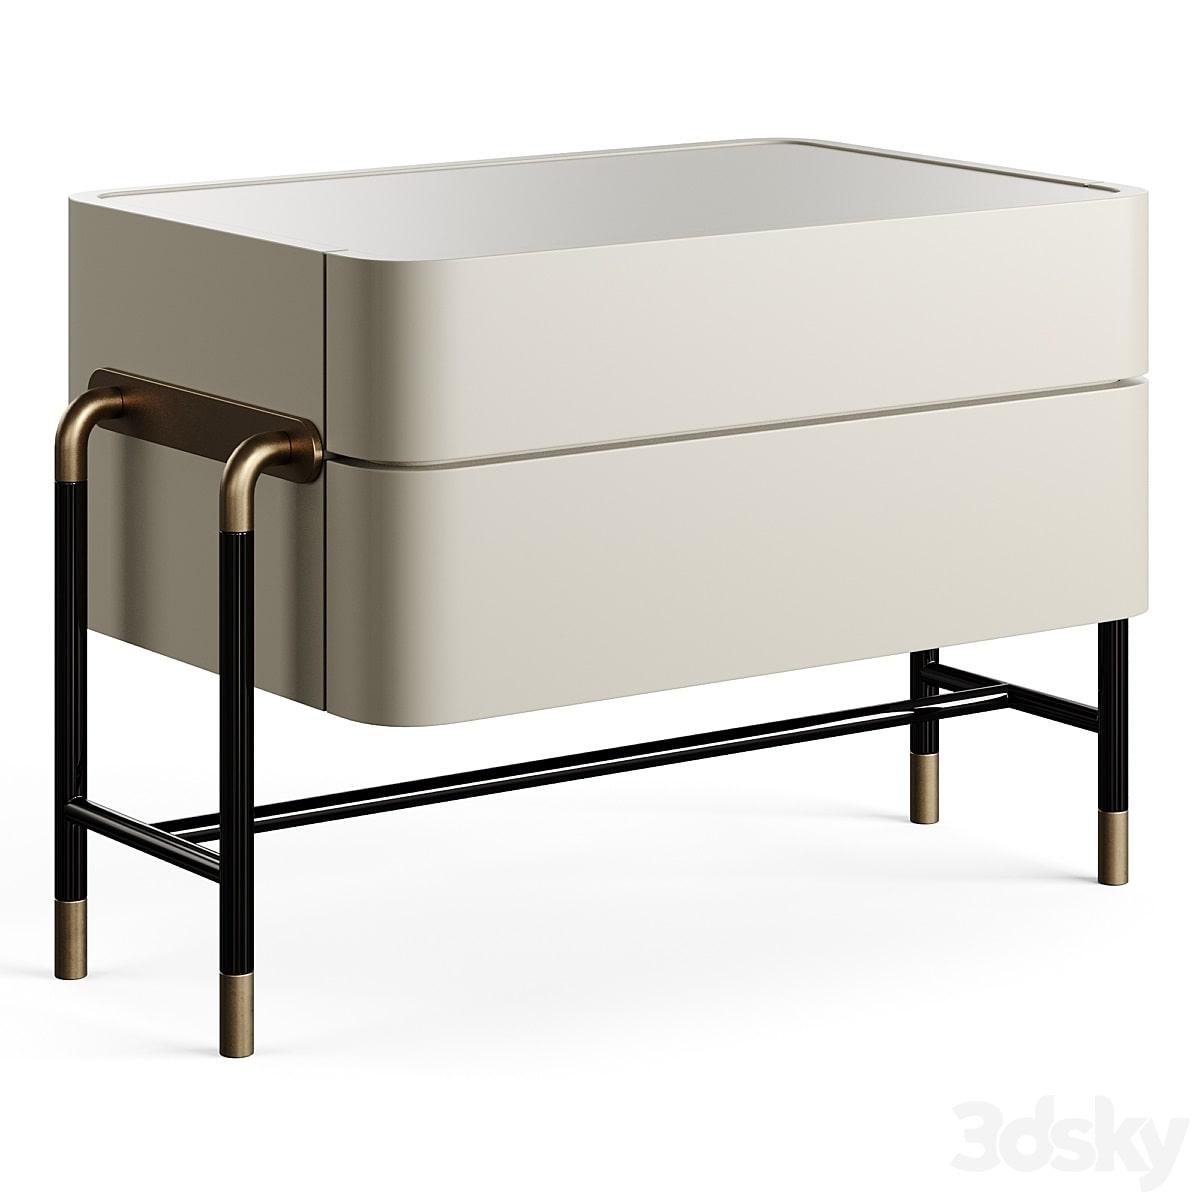 آبجکت ست سه عددی میز کنار تخت چوبی با پایه فلزی مدل Mezzo Collection